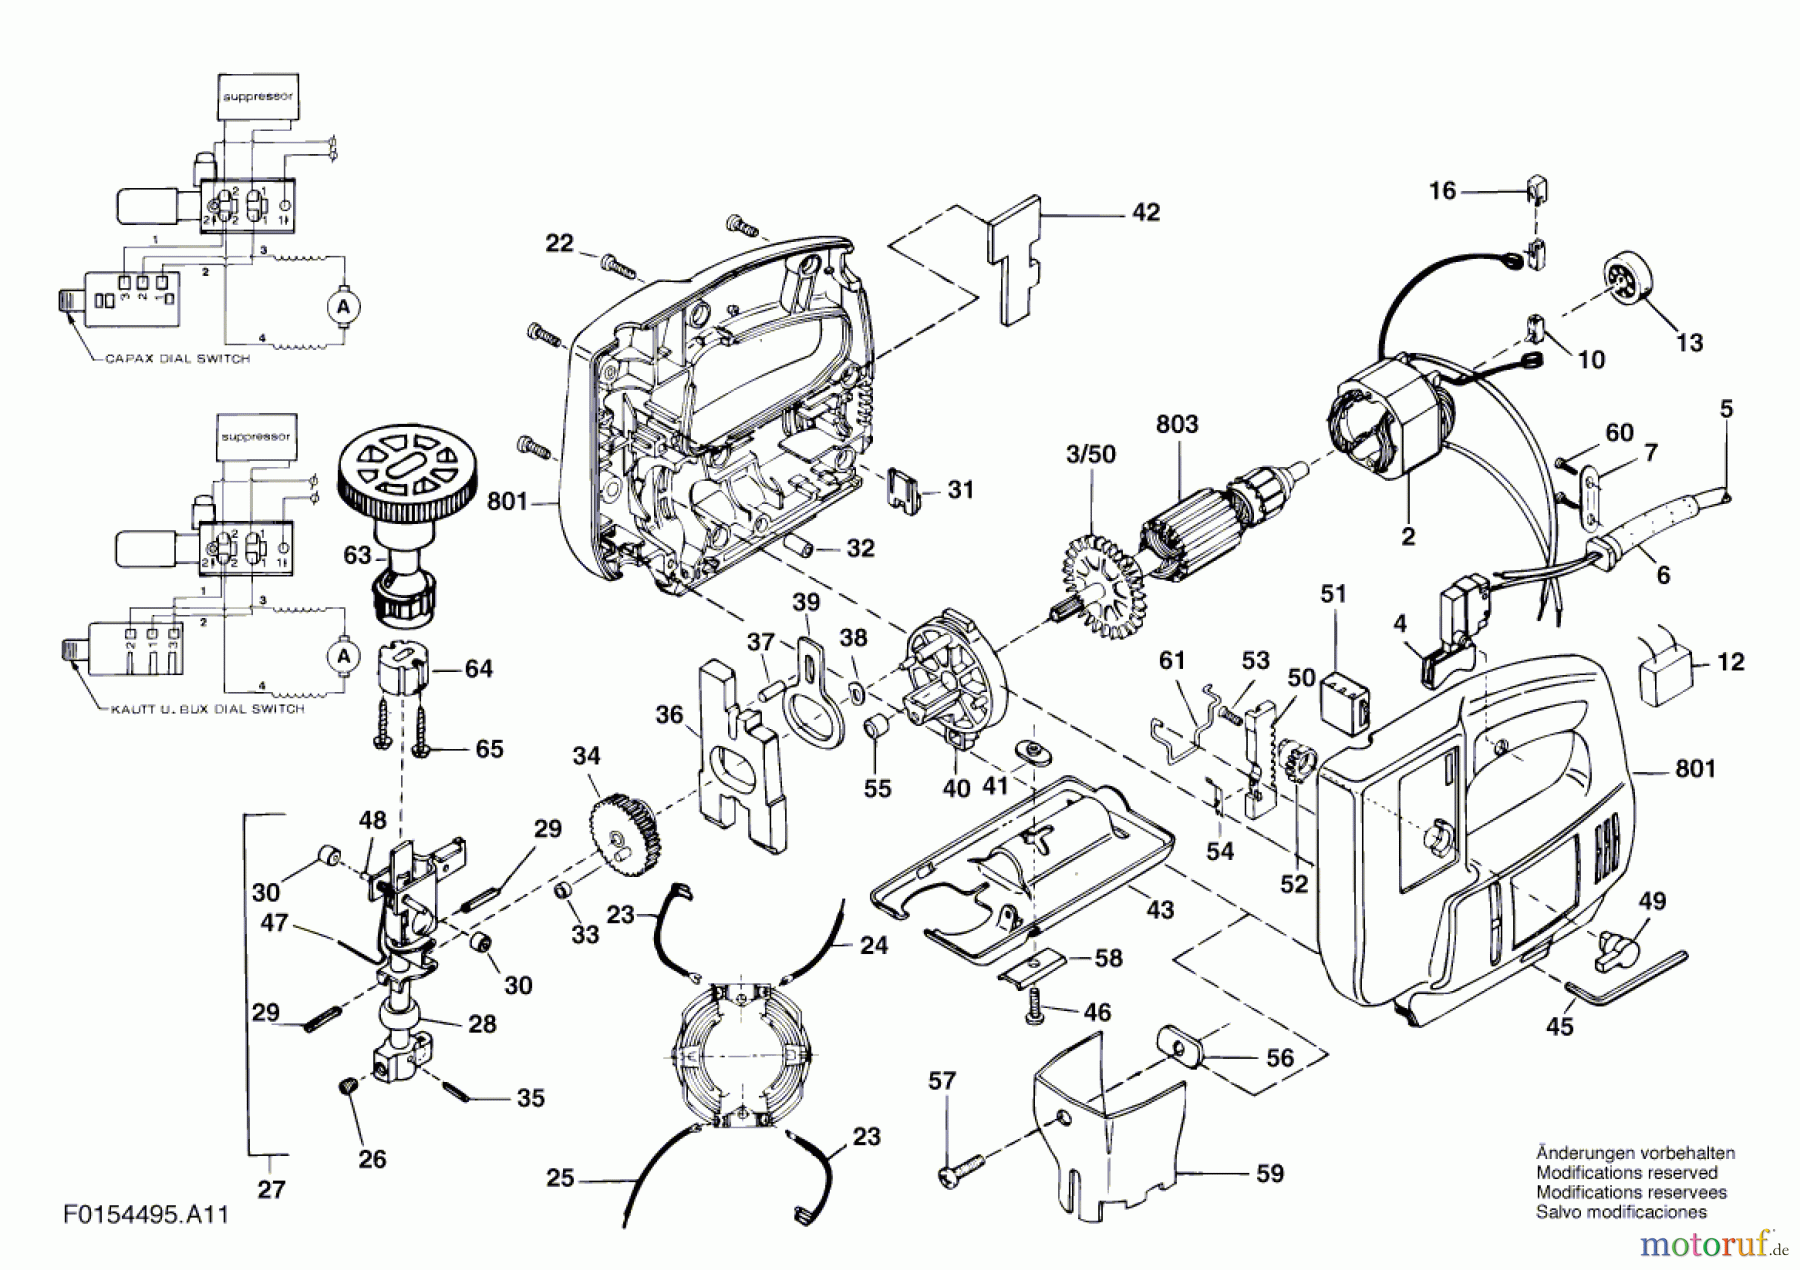  Bosch Werkzeug Stichsäge 4495 H1 Seite 1